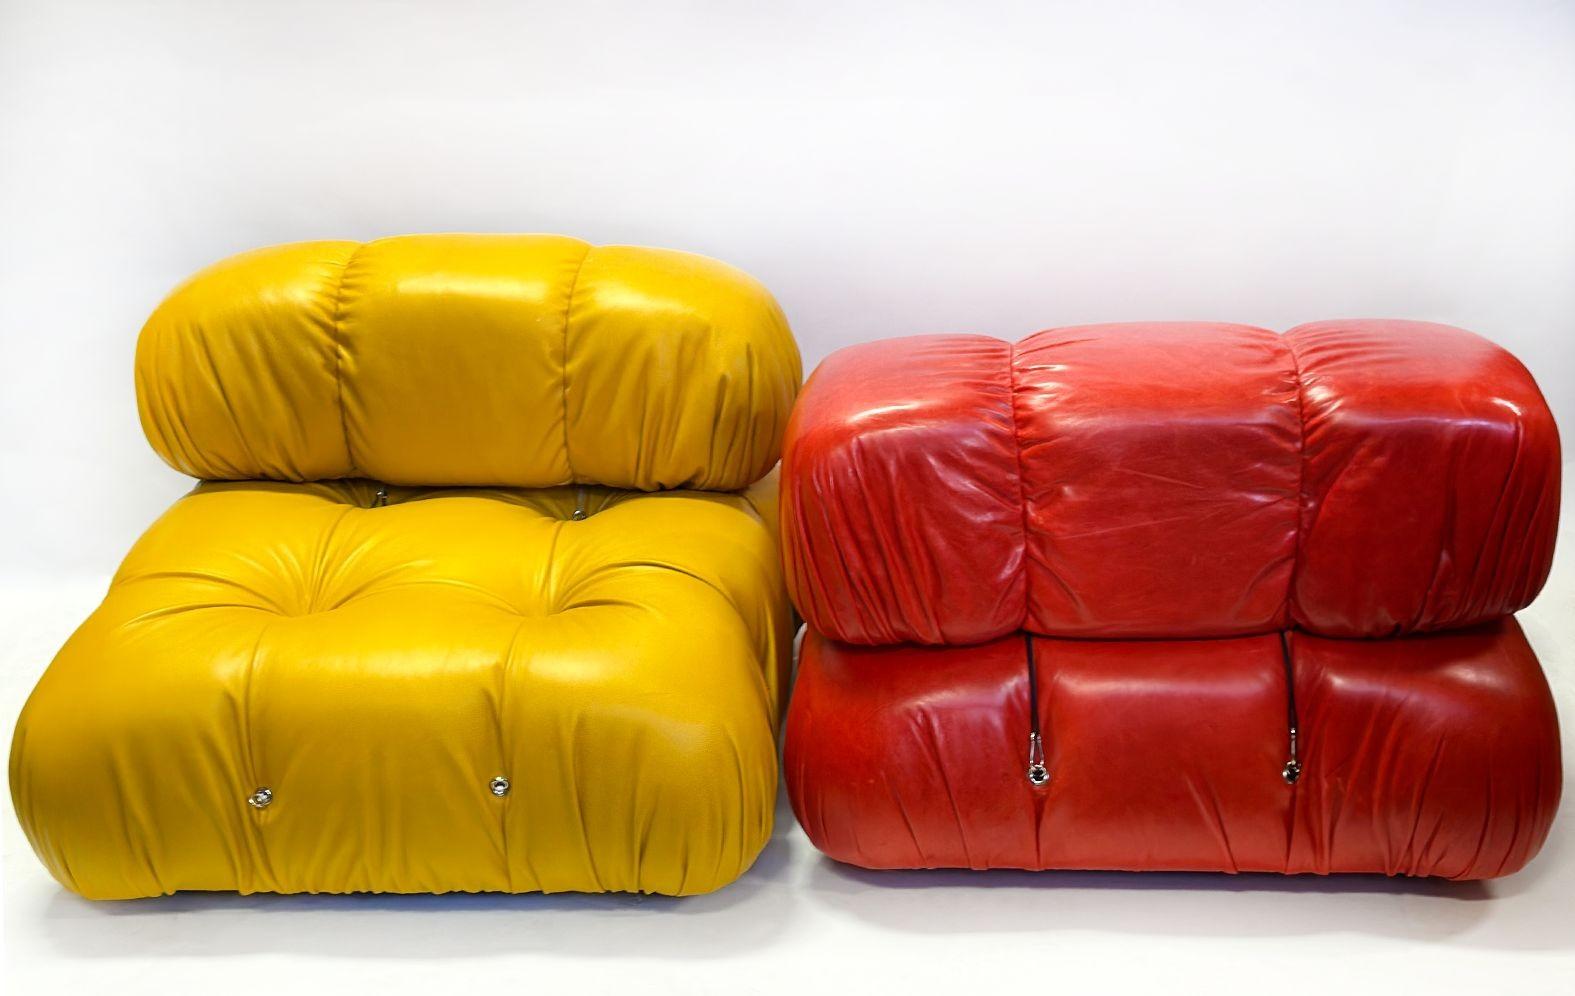 Buntes Ledersofa mit vier Sitzplätzen, hergestellt von Mario Bellini in den 1970er Jahren. Jeder abnehmbare Sitz zeichnet sich durch seine einzigartigen Farben aus, darunter heißes Orange, dunkles Türkis, Honiggelb und leuchtendes Rot. Die